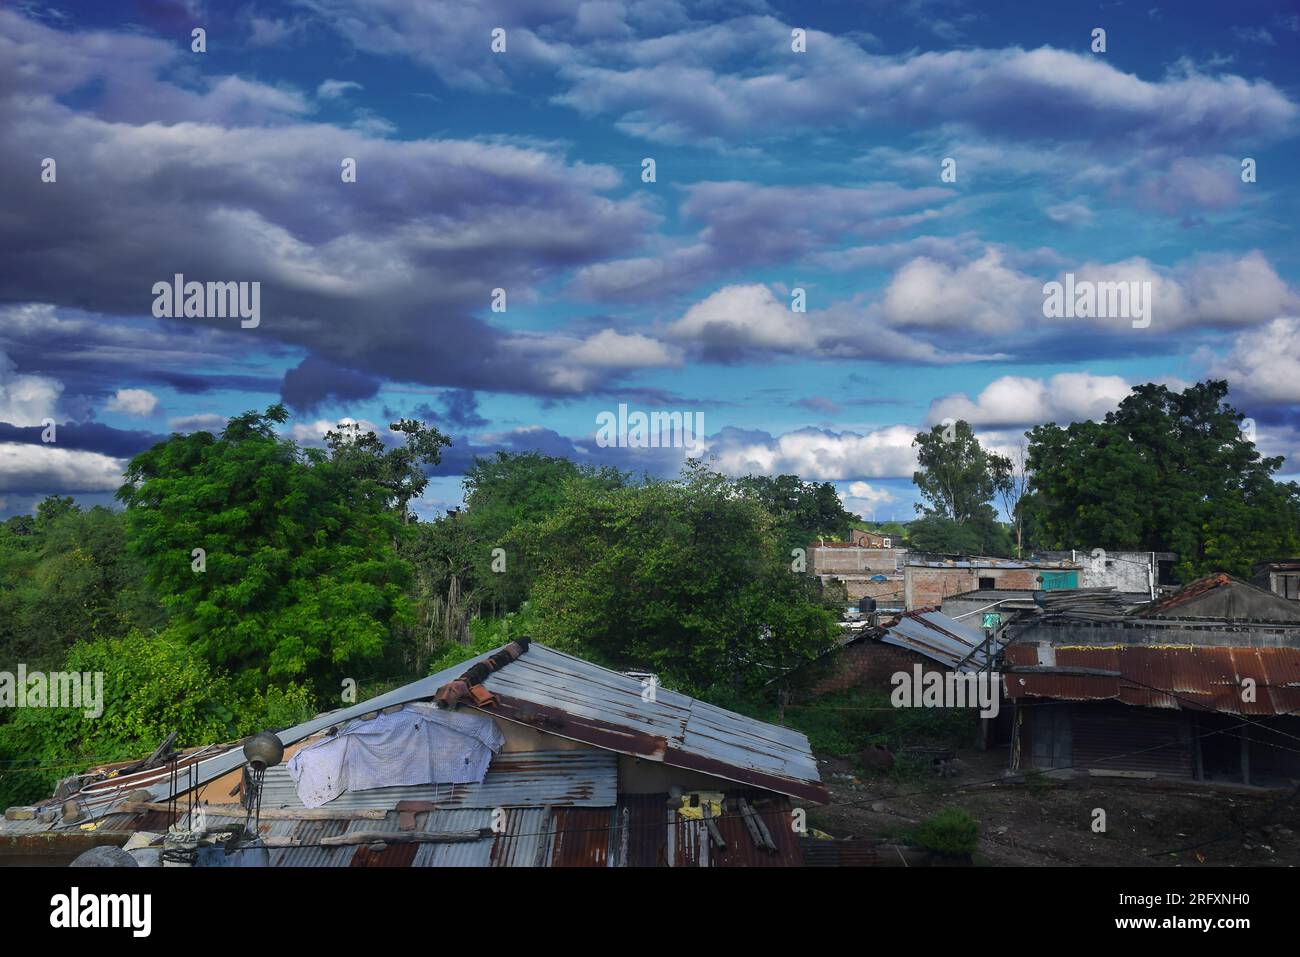 Belle vue sur le village indien en saison des pluies, ciel nuageux et verdure Banque D'Images